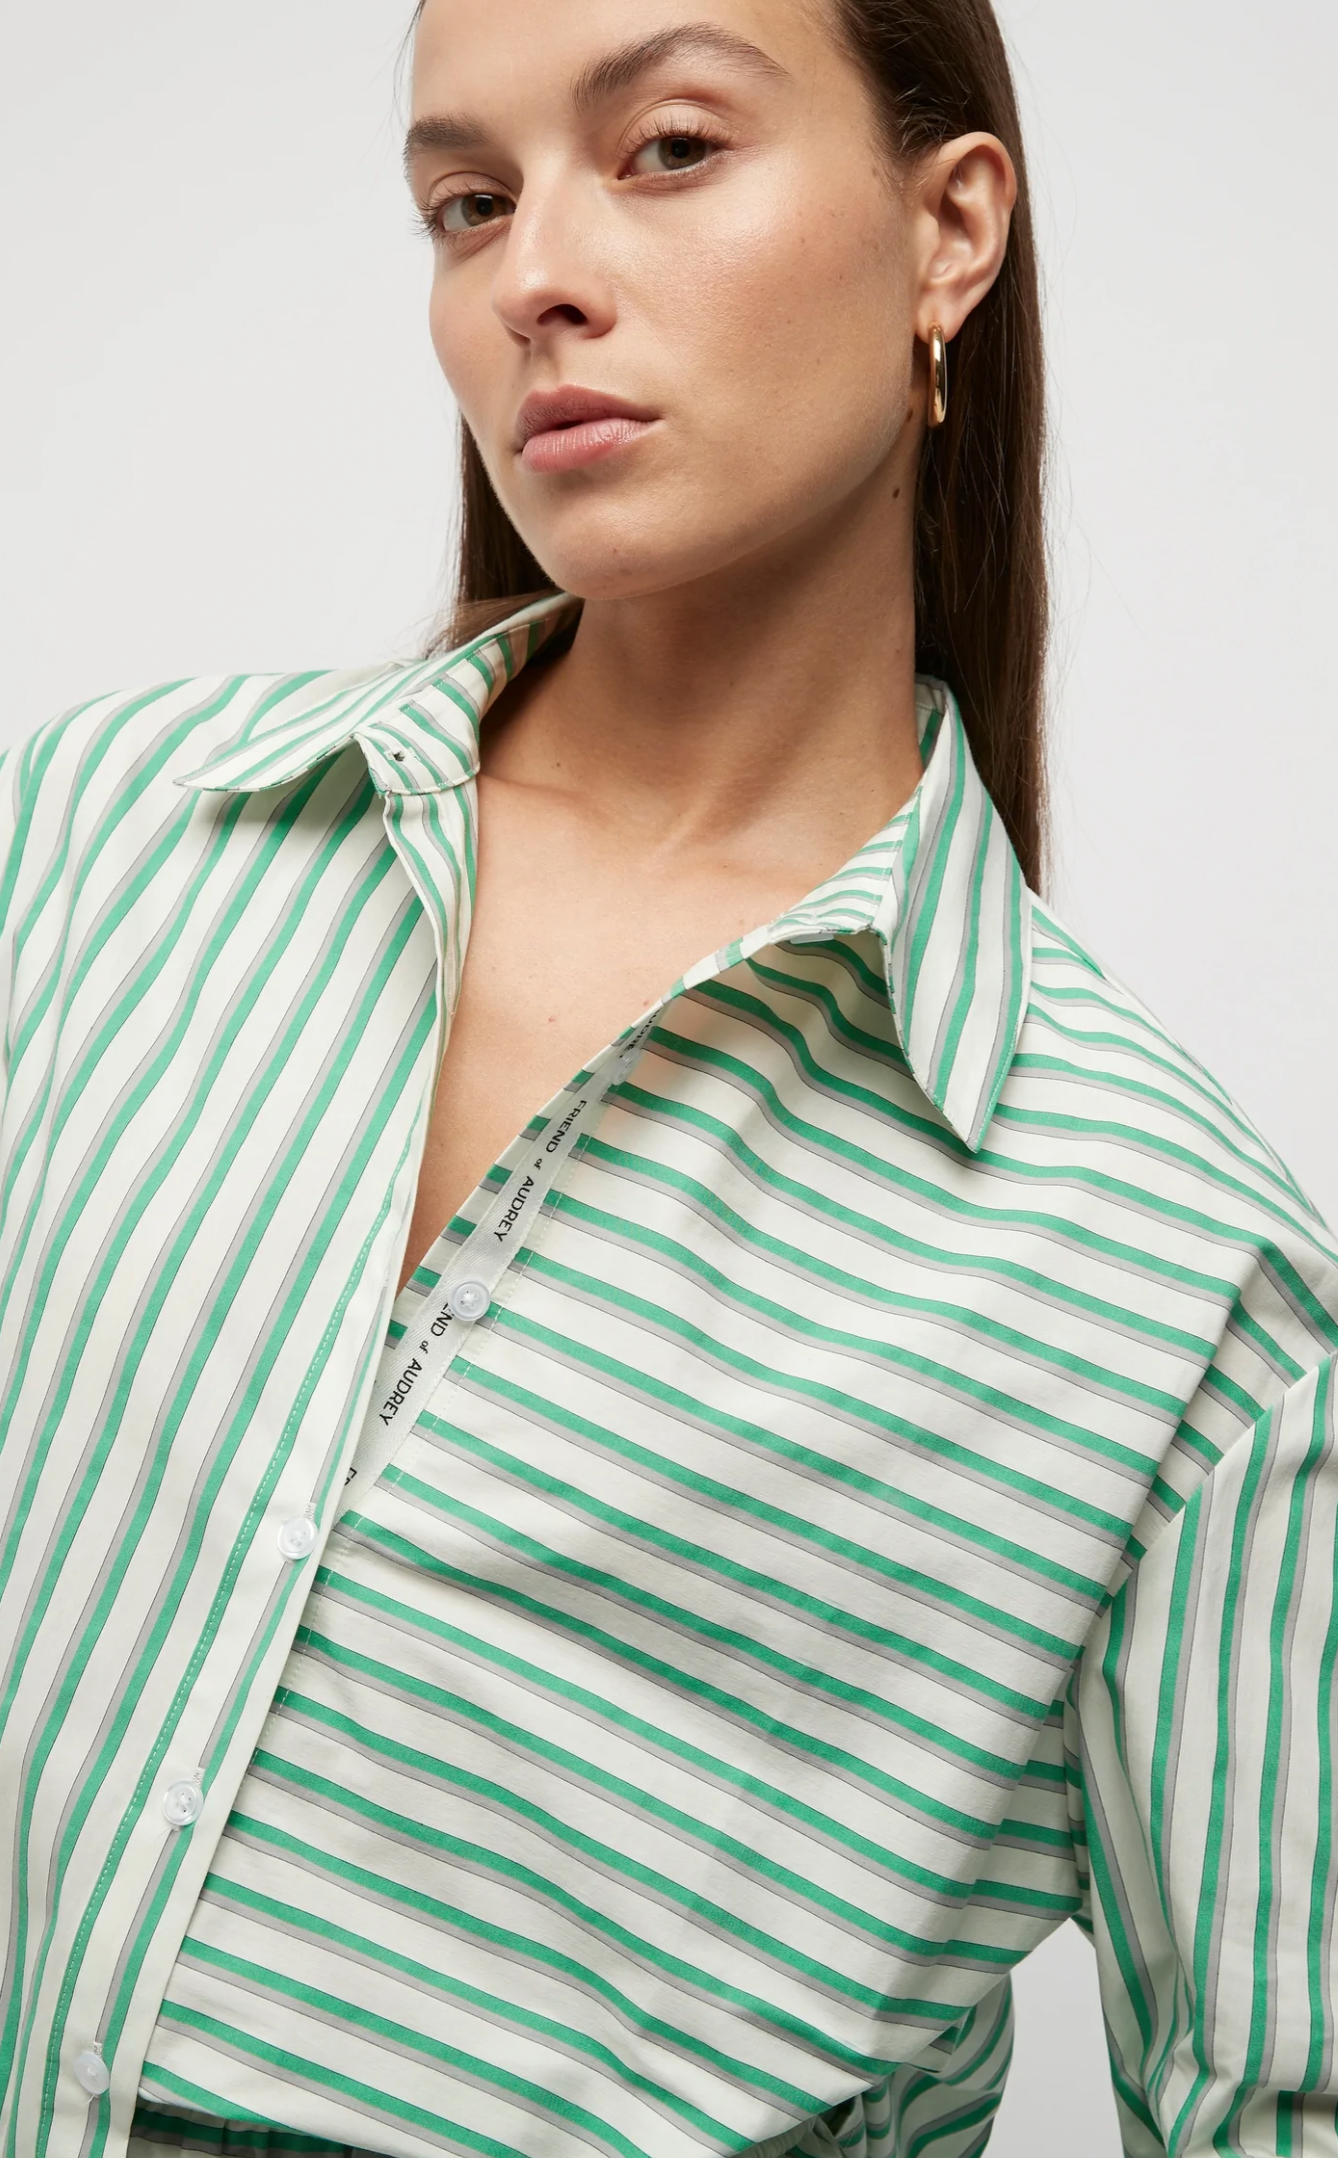 ENOF striped shirts